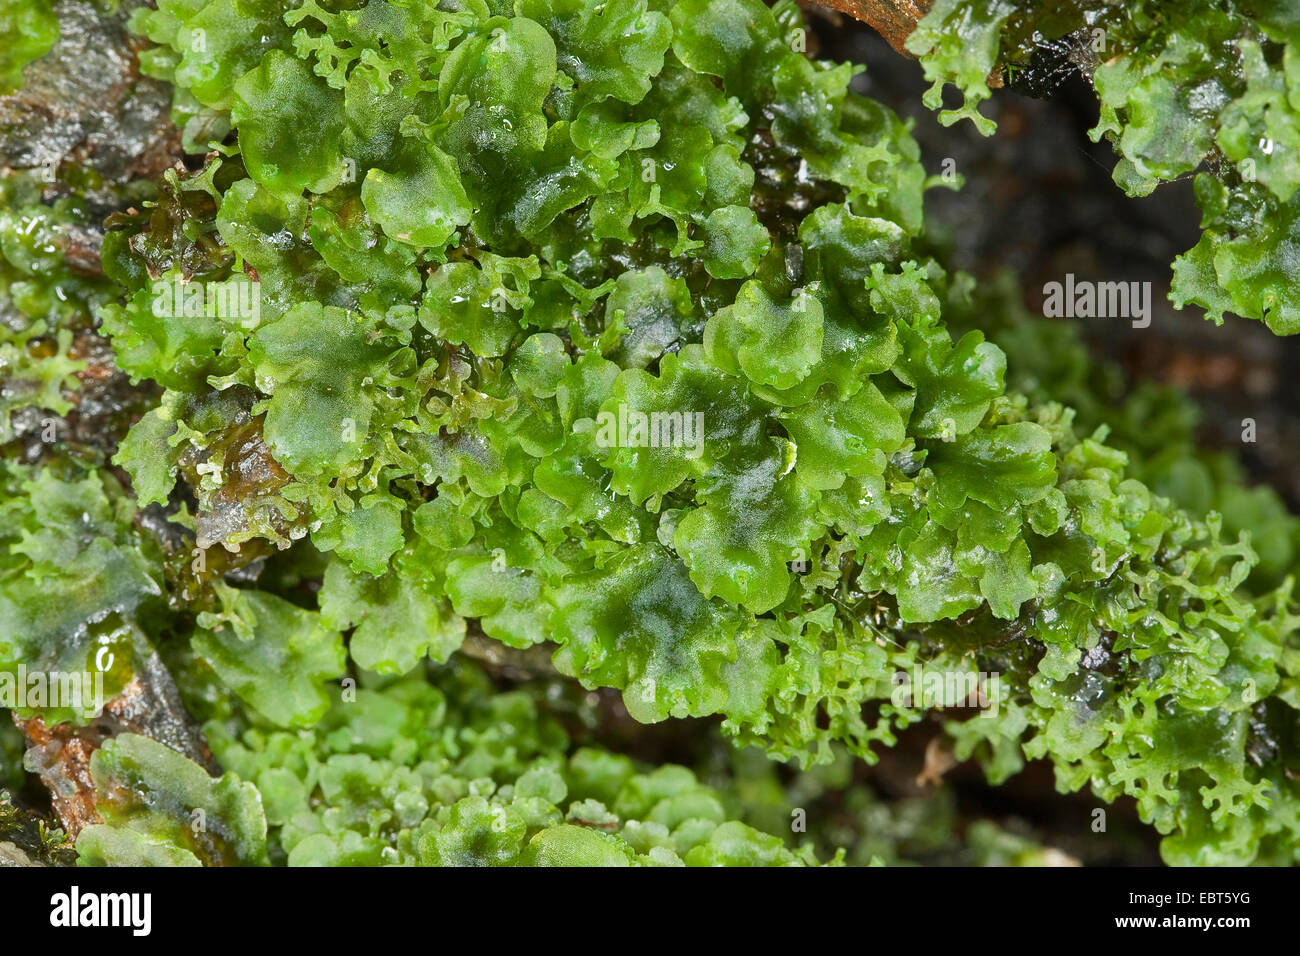 liverwort (Pellia endiviifolia), thallus, Germany Stock Photo